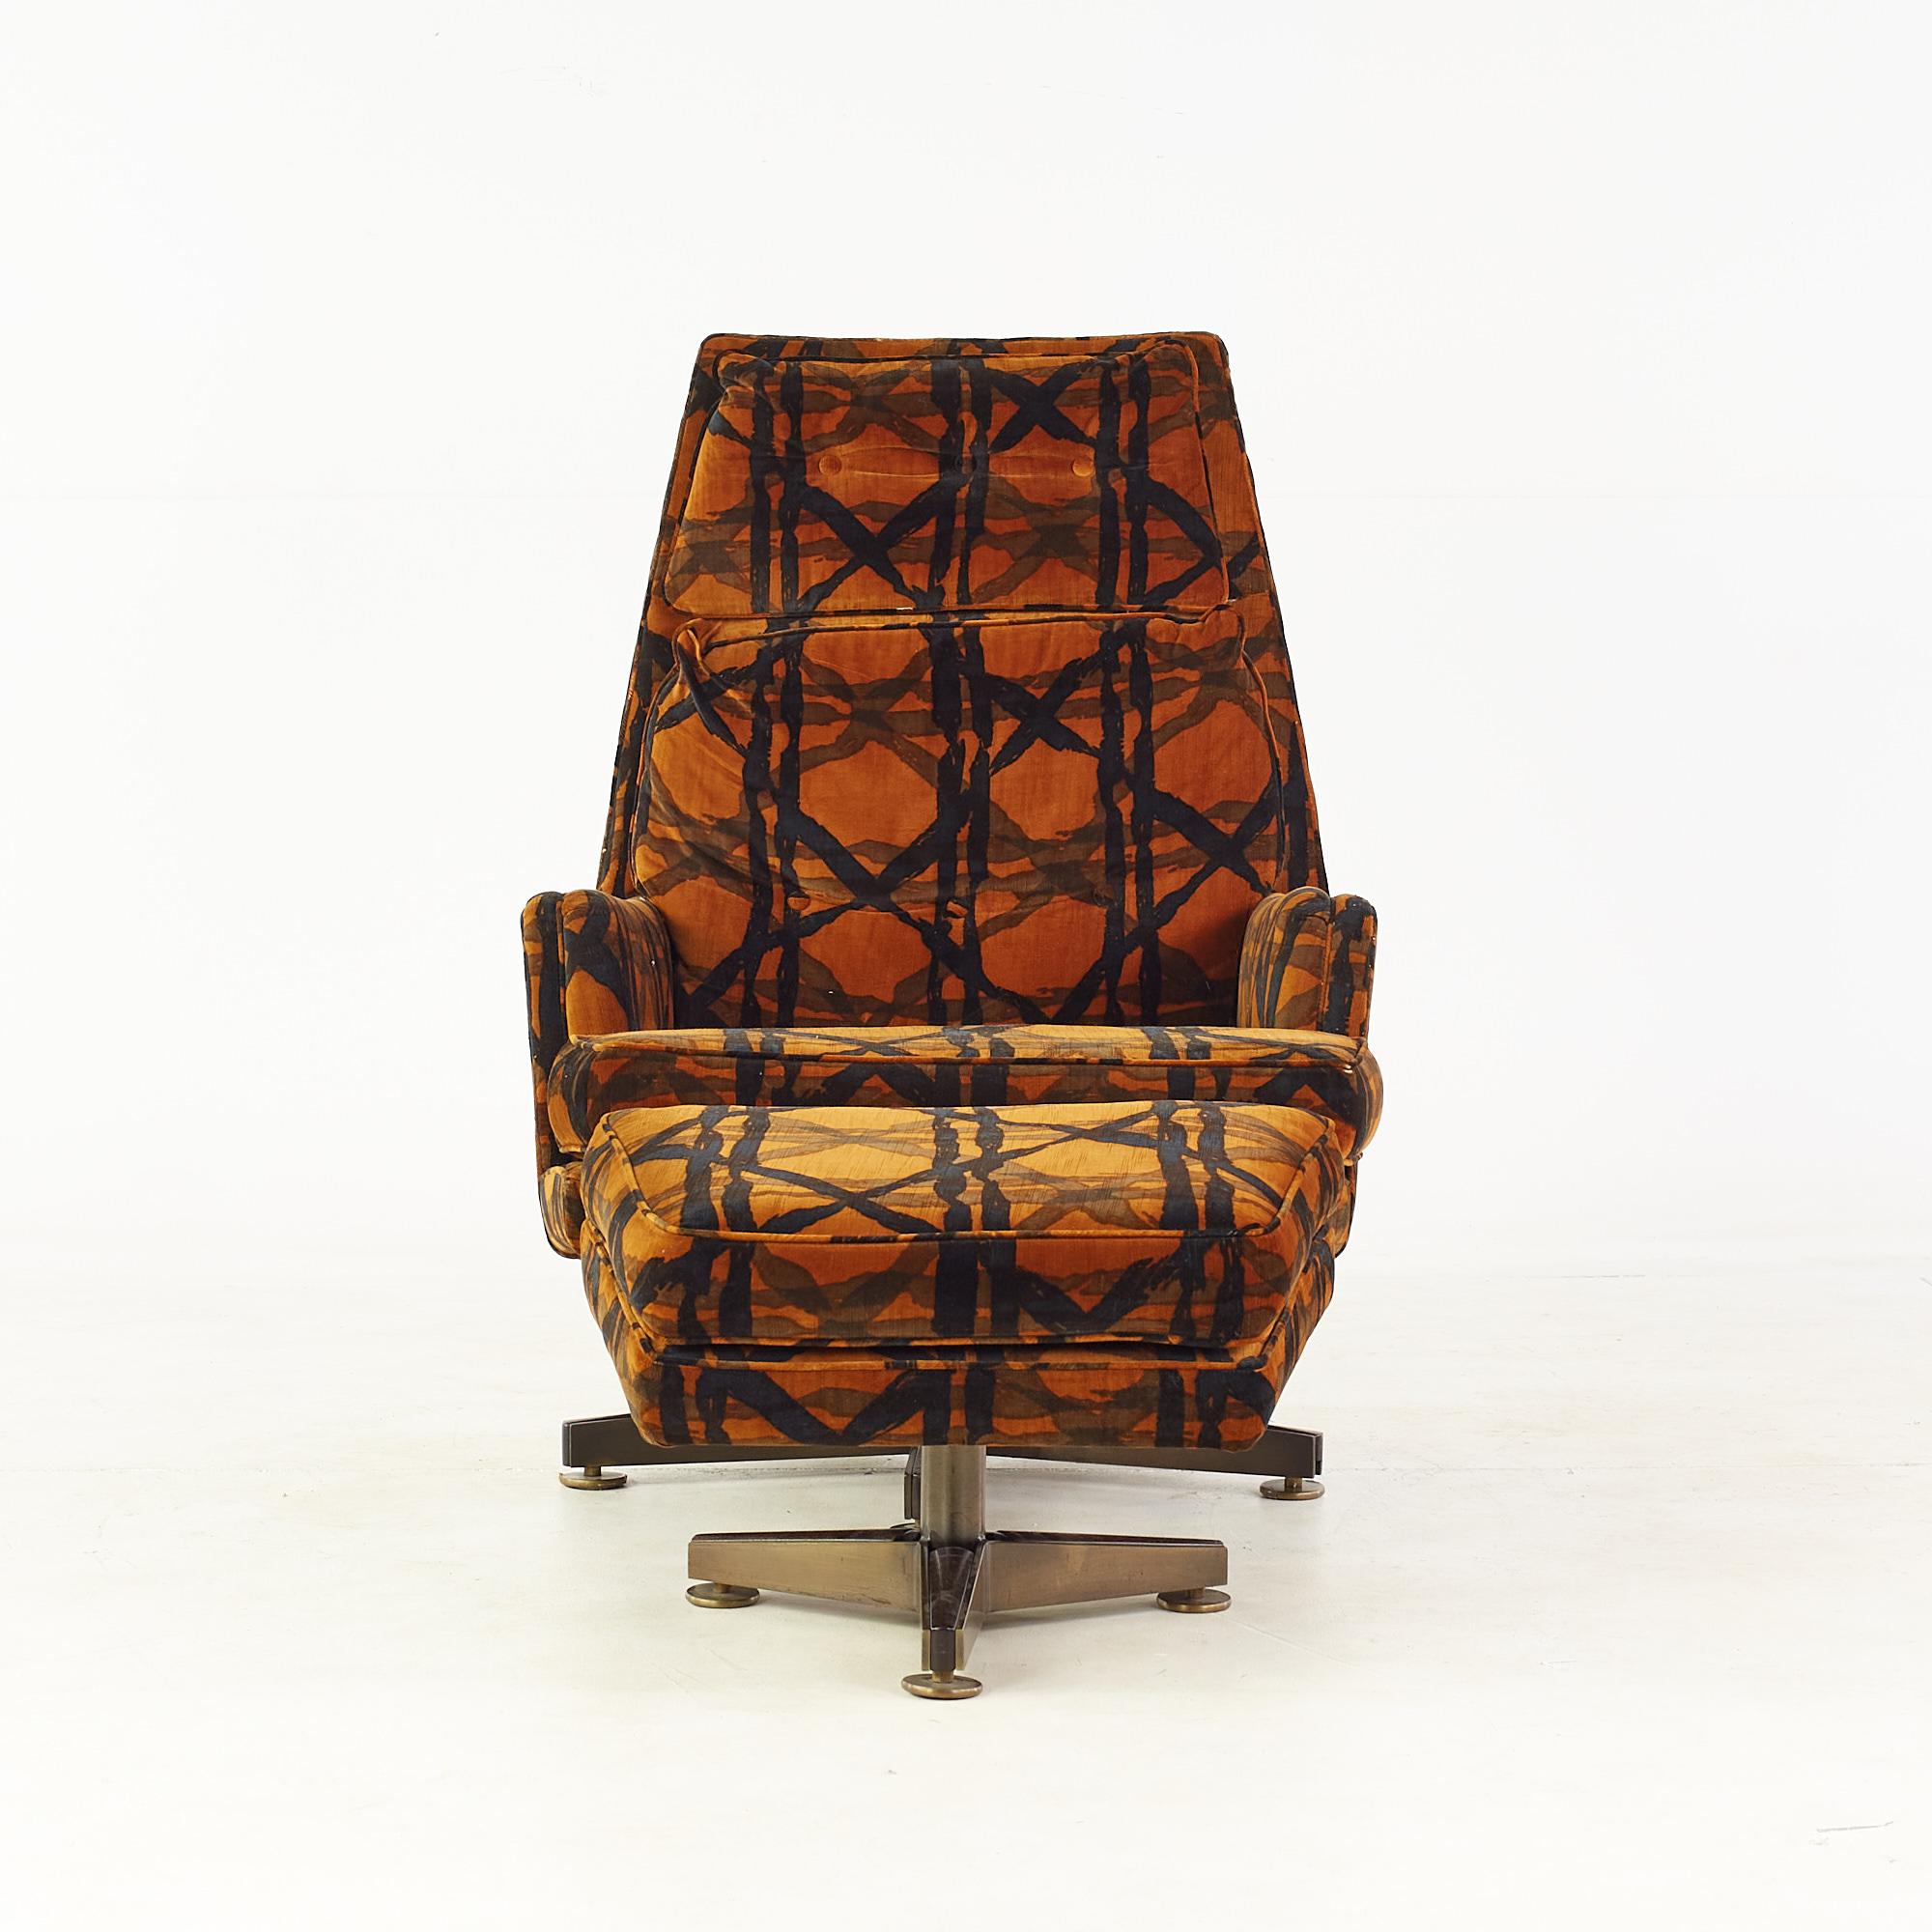 Edward Wormley for Dunbar Mid Century Chaise longue et ottoman avec tissu Jack Lenor Larsen

La chaise mesure : largeur 32 x profondeur 48 x hauteur 42.5, avec une hauteur d'assise de 17 pouces
L'ottoman mesure : 24 pouces de largeur x 18 pouces